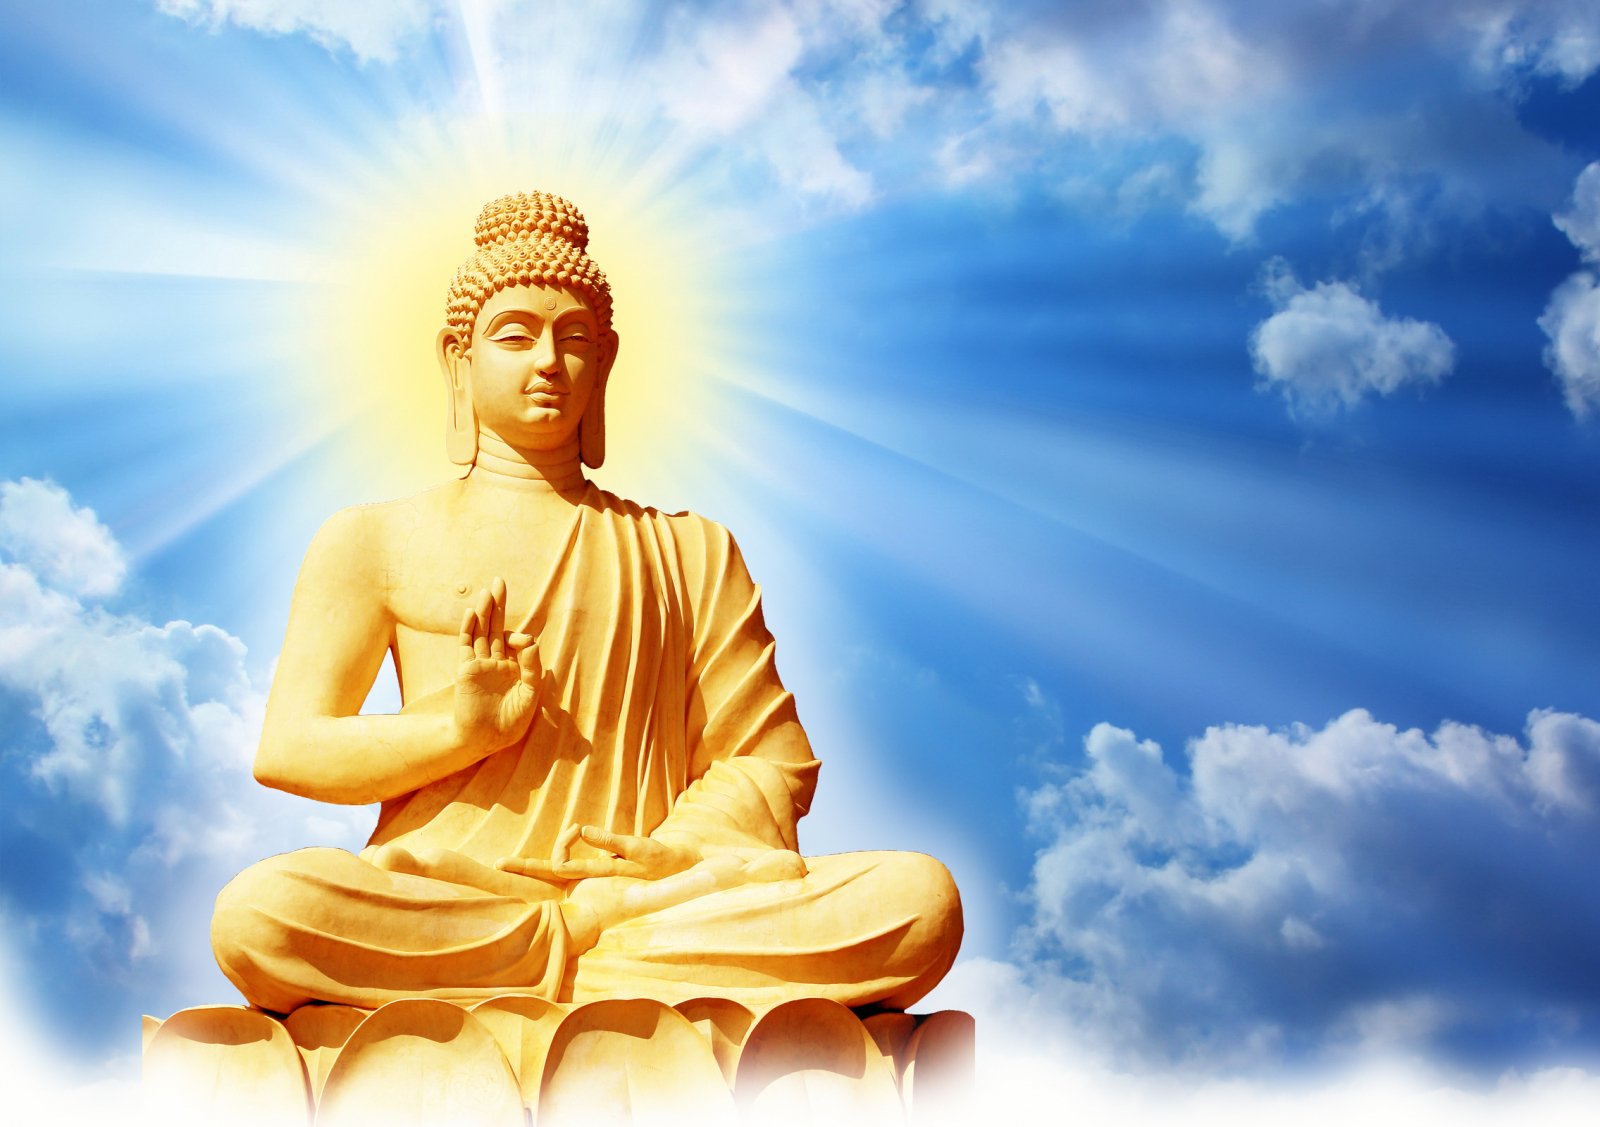 32 tướng tốt của Đức Phật là kết quả tu hành vô lượng kiếp vì chúng sanh mà xả bỏ thân mạng, làm lợi ích lớn lao